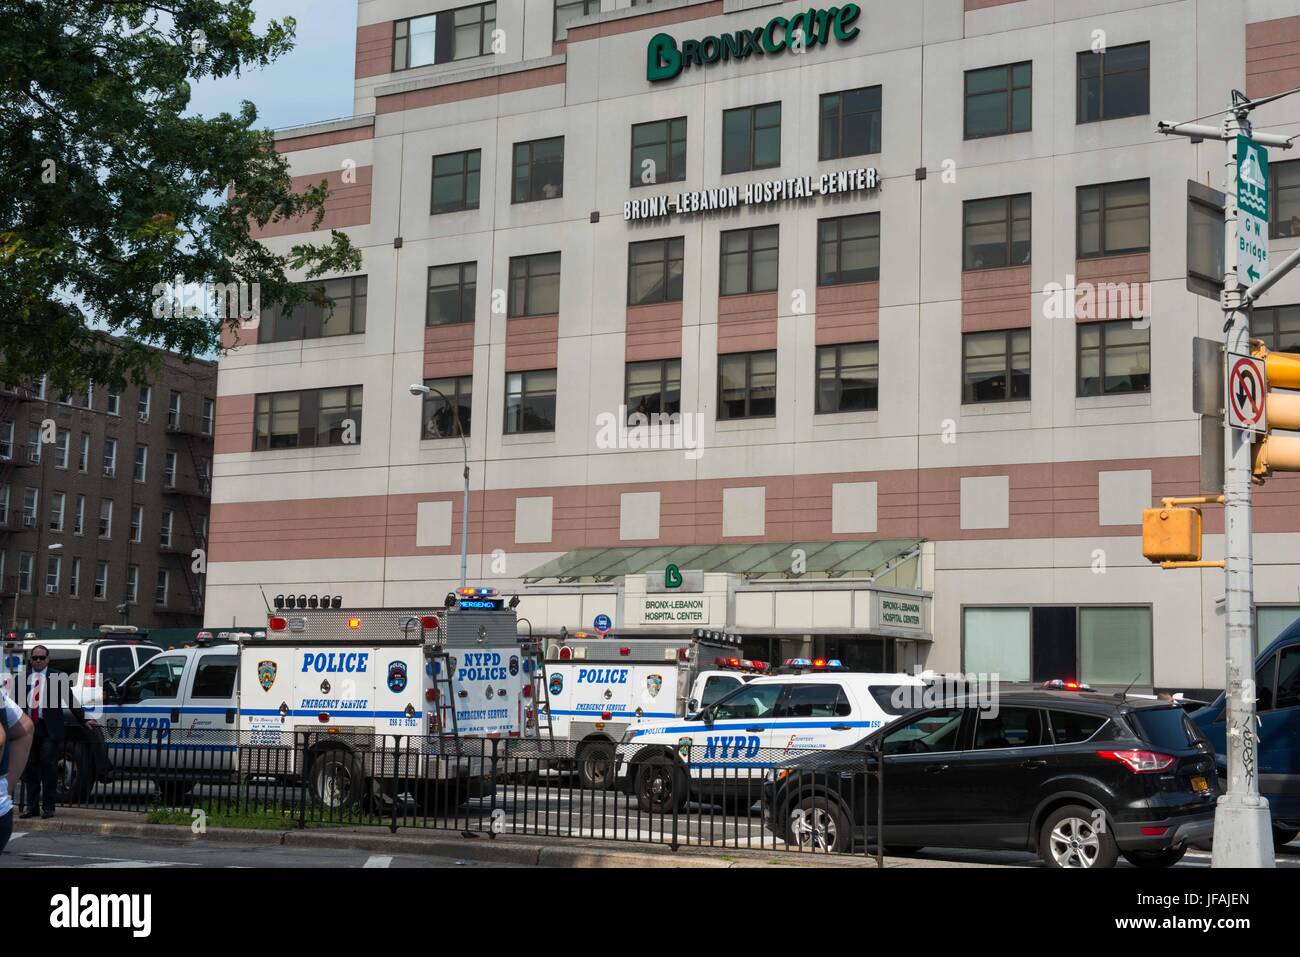 New York, New York, Stati Uniti d'America. Il 30 giugno, 2017. Il 30 giugno 2017 un ex dipendente ha riferito di essere il dottor Henry Bello, un medico che si è dimesso dopo le accuse di molestie sessuali, è venuto a hopsital con un AR-15 fucile nascosto sotto un bianco camice ed ha aperto il fuoco su Bronx Libano il personale e i pazienti. È riportato che ha ucciso almeno un medico donna e sparato cinque altri prima di impostare se stesso sul fuoco e poi si spara in testa. Credito: Brigette Supernova/Alamy Live News Foto Stock